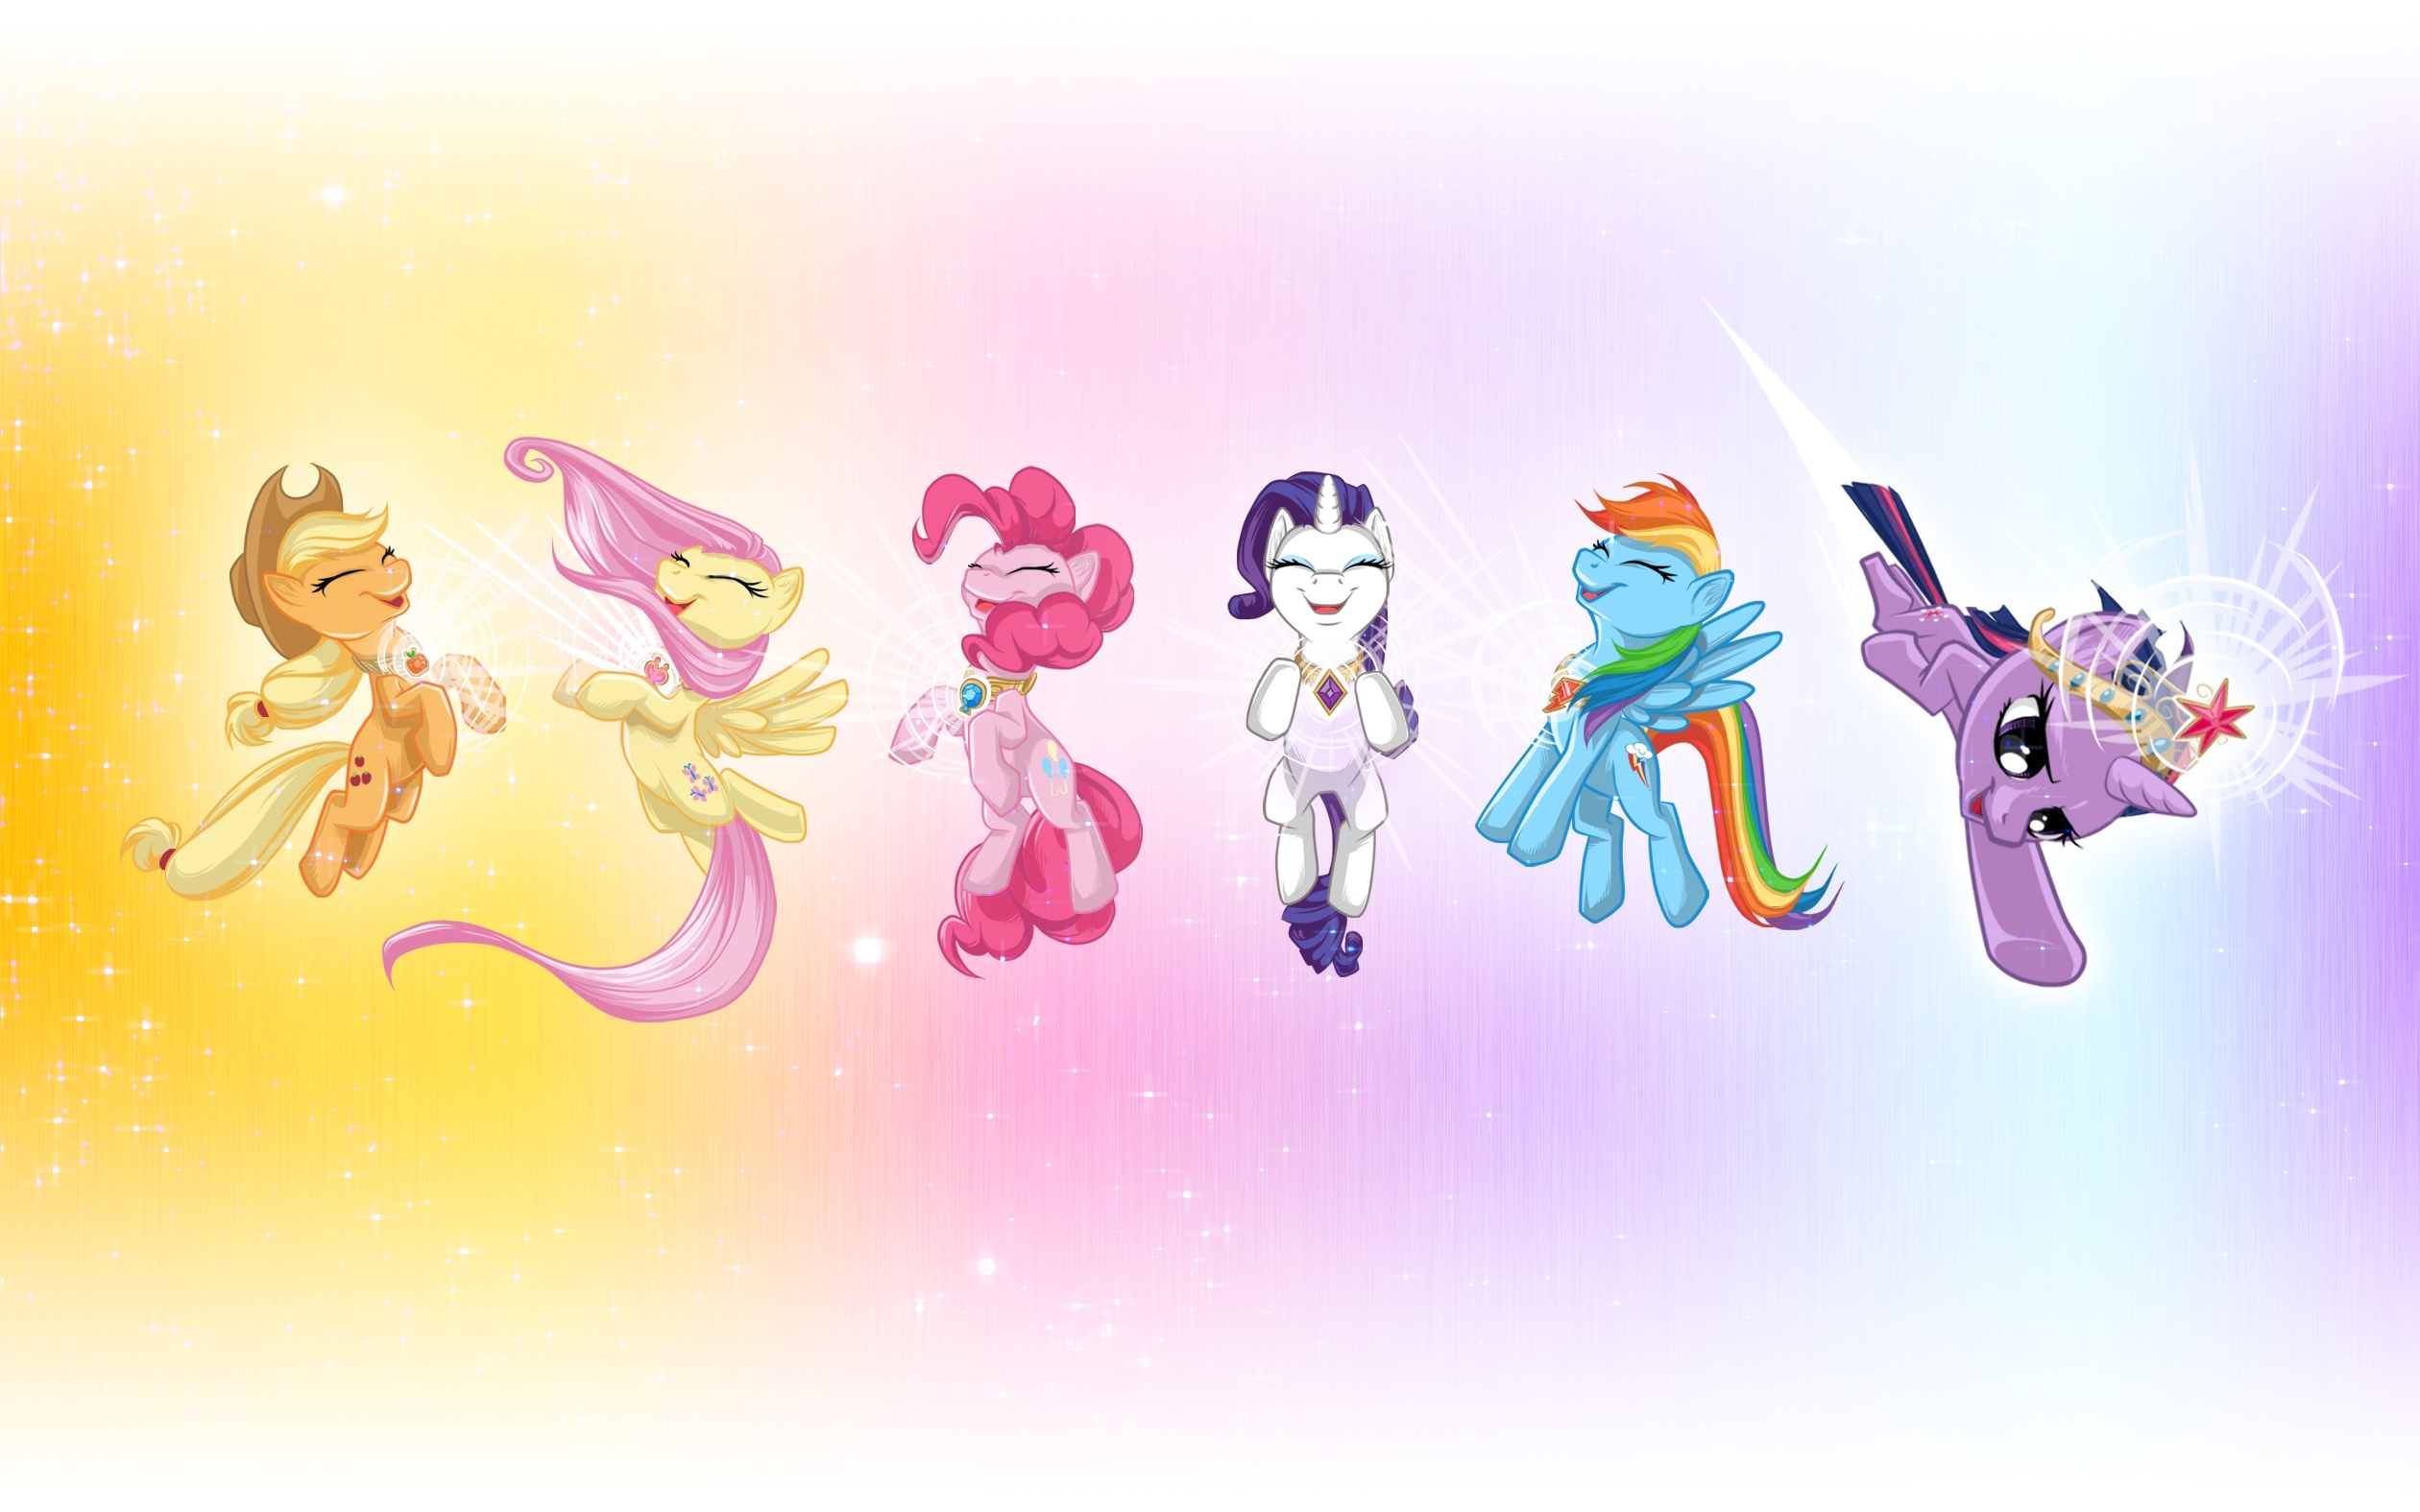 2520x1575 XD My Little Pony Friendship is Magic Wallpaper (29882902) Fanpop